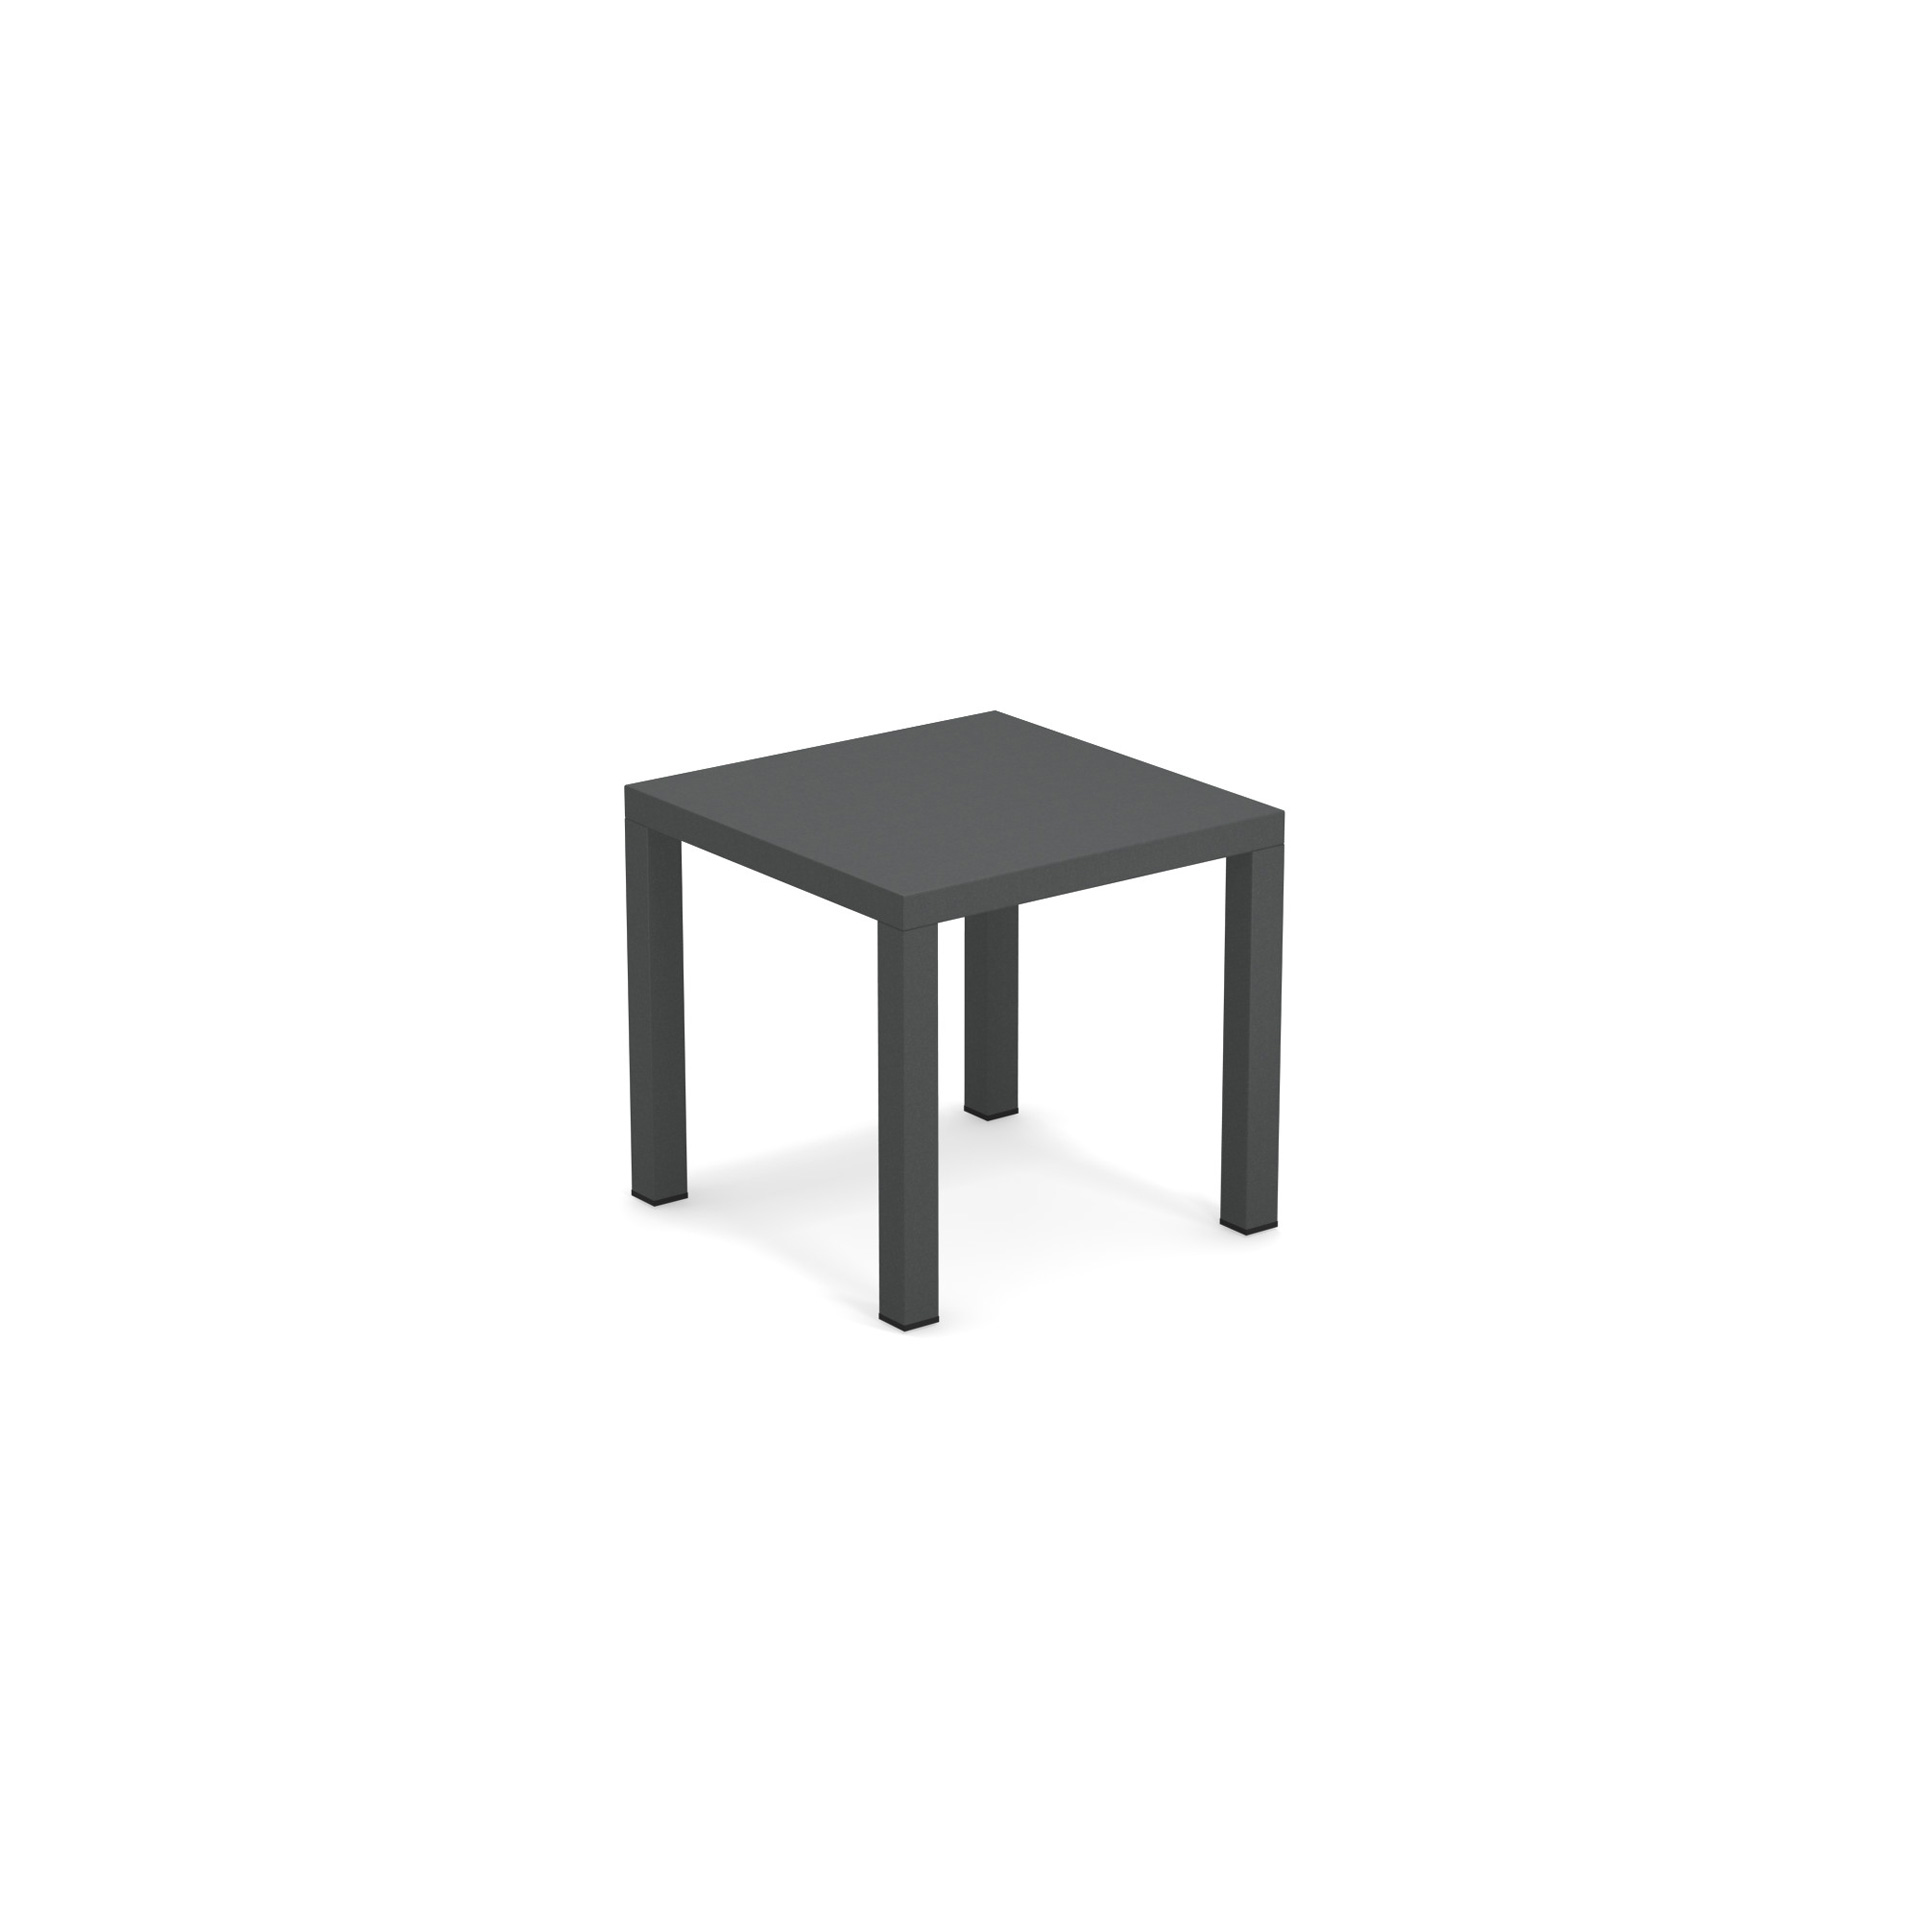 Round niedriger Tisch 45x45